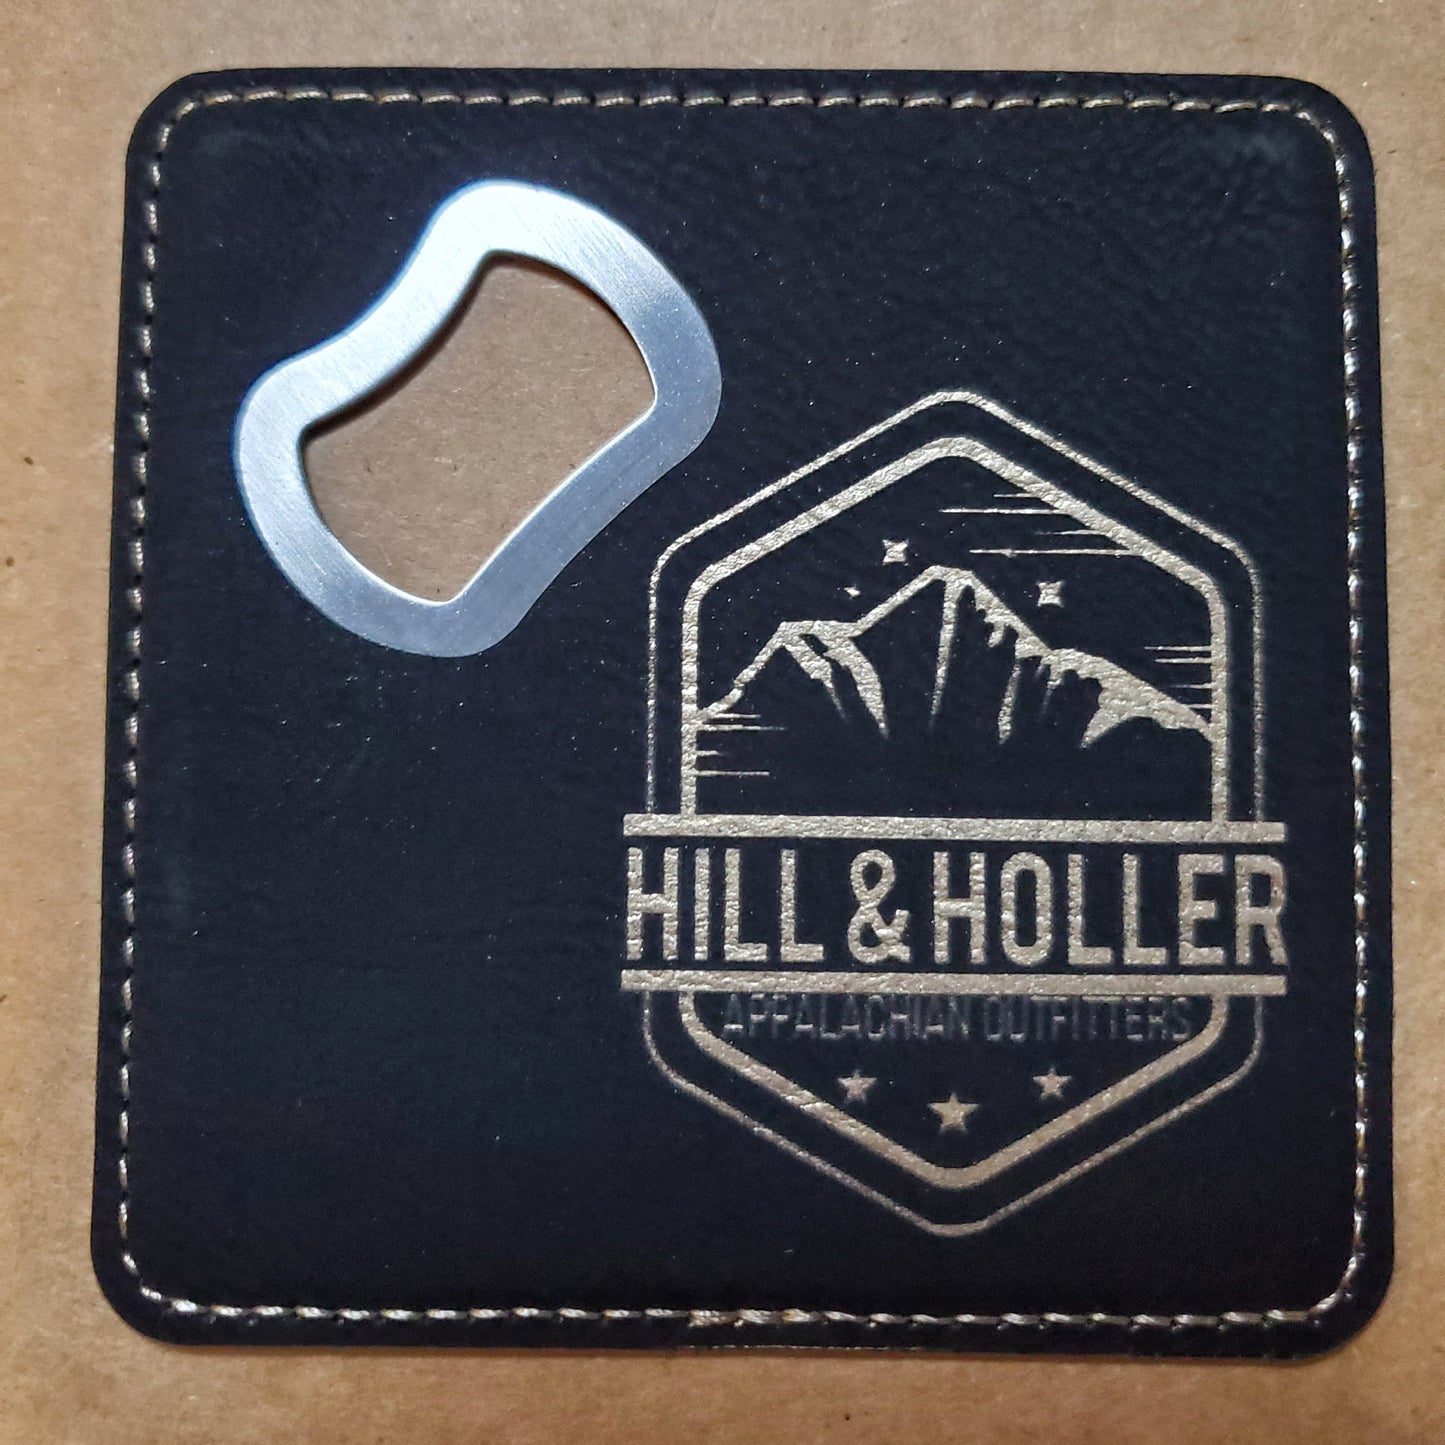 Hill & Holler Black Bottle Opener Coaster